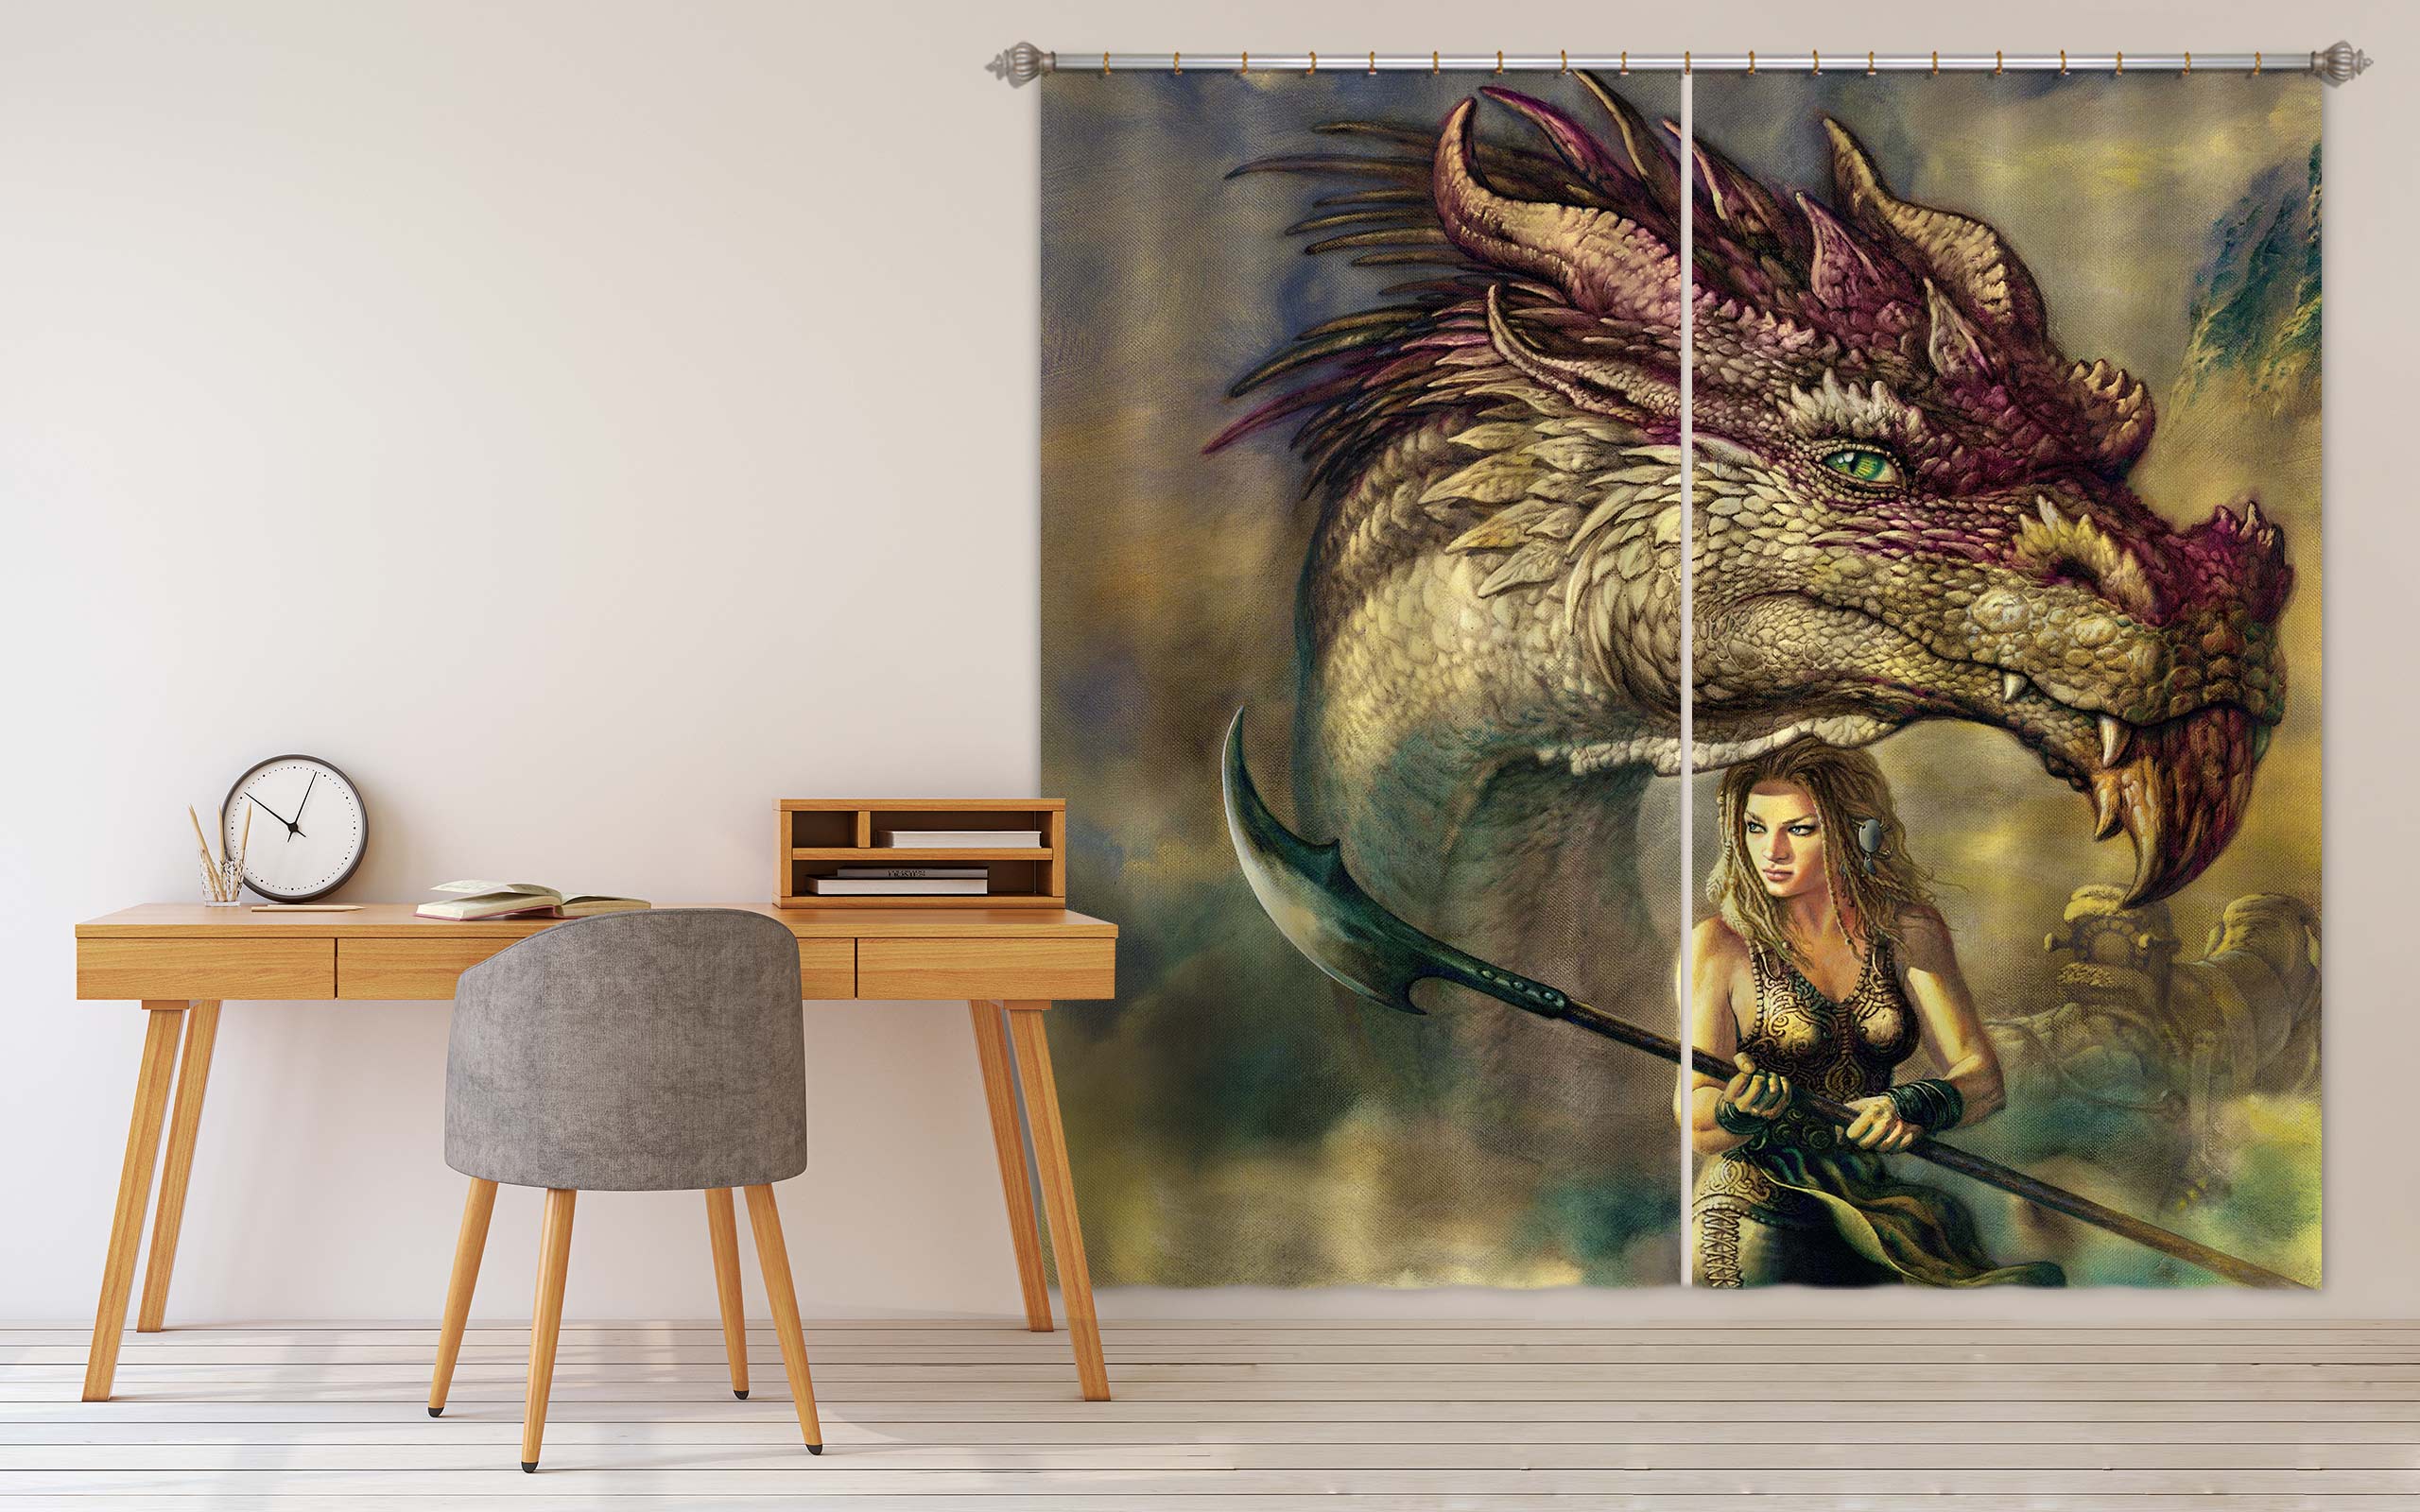 3D Dragon Woman 8018 Ciruelo Curtain Curtains Drapes